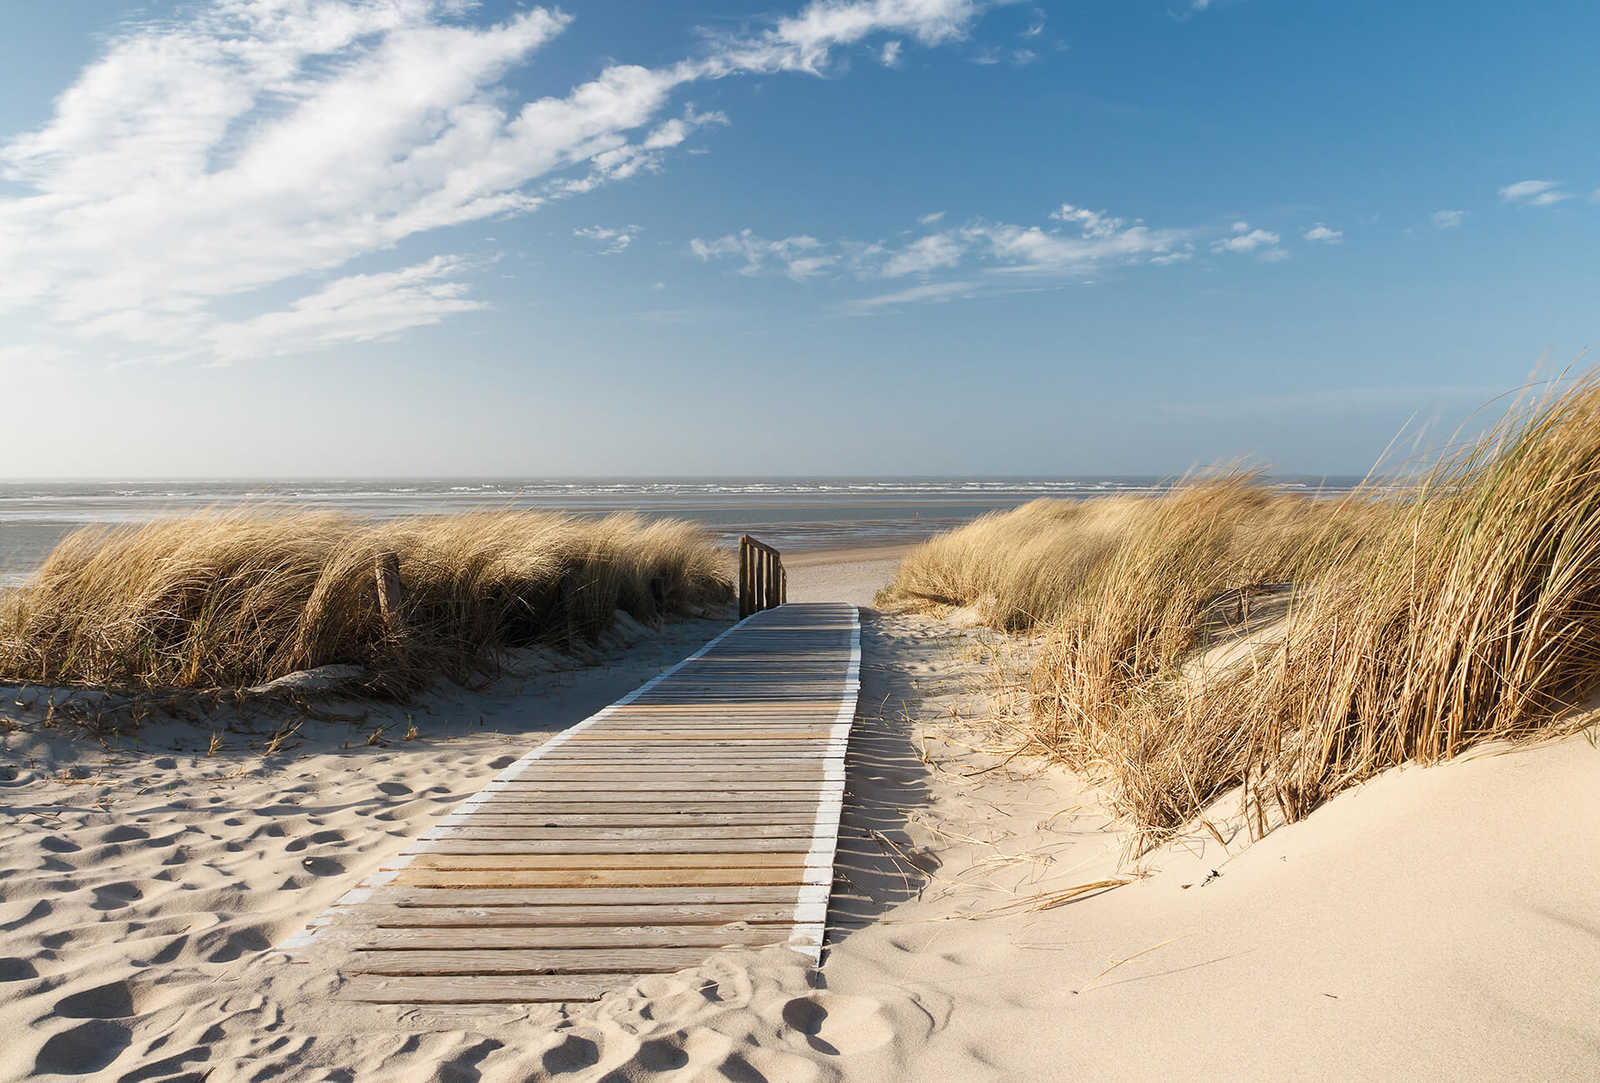         Fototapete Strand mit Dünen und Weg – Creme, Blau, Weiß
    